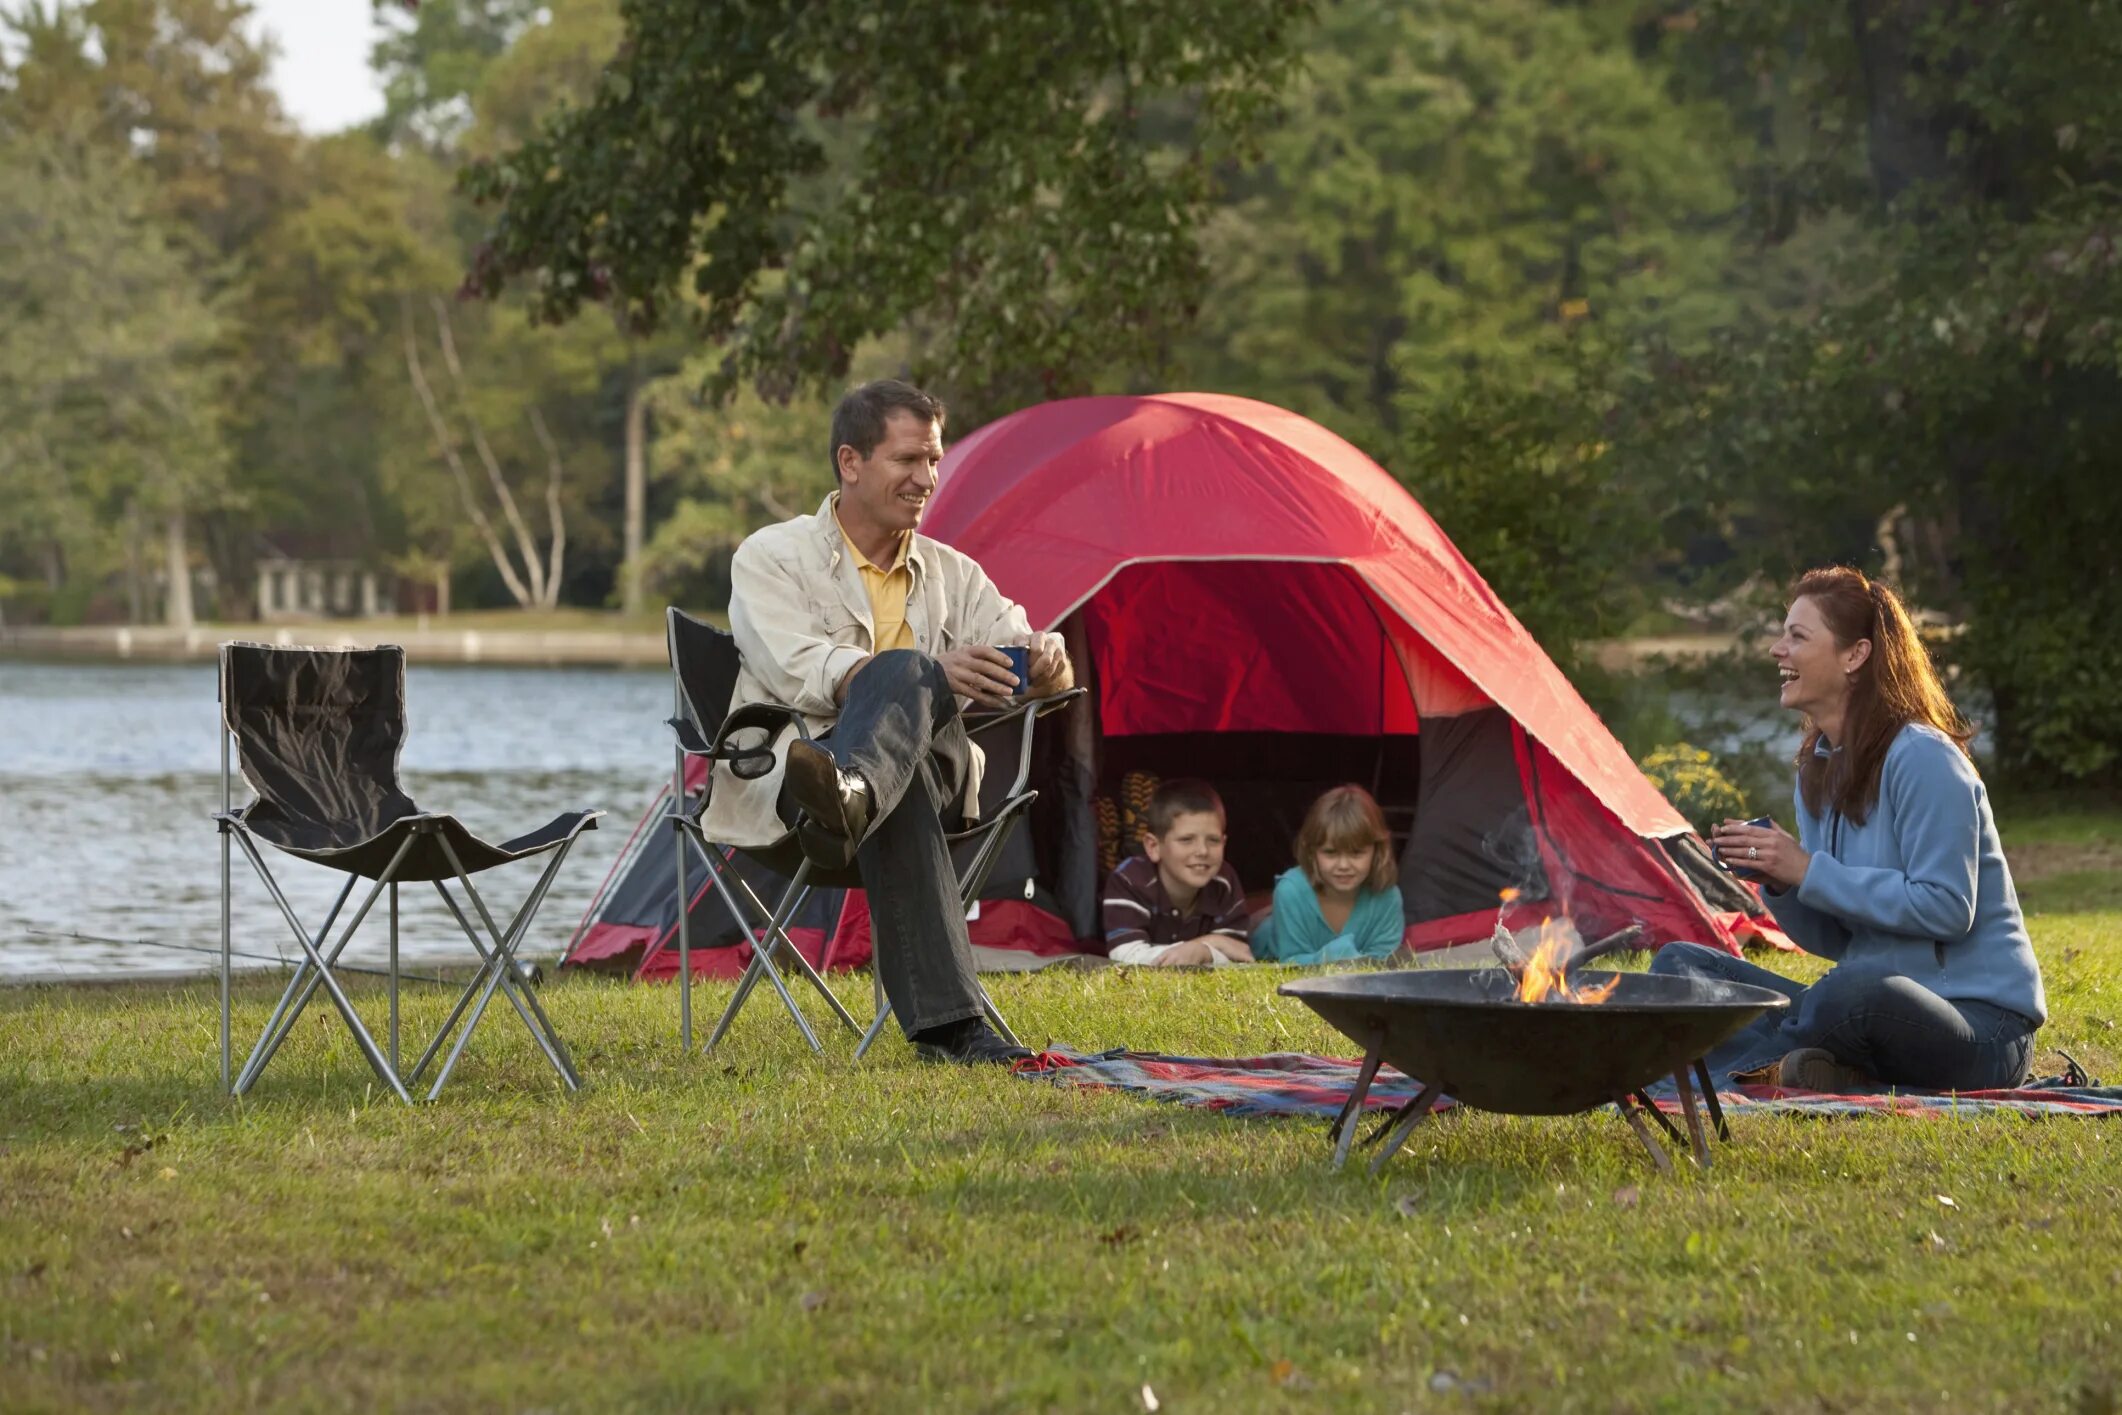 Camping with dad. Палатка на природе. Отдыхаем на природе. Пикник с семьей на природе. Пикник на природе с палатками.